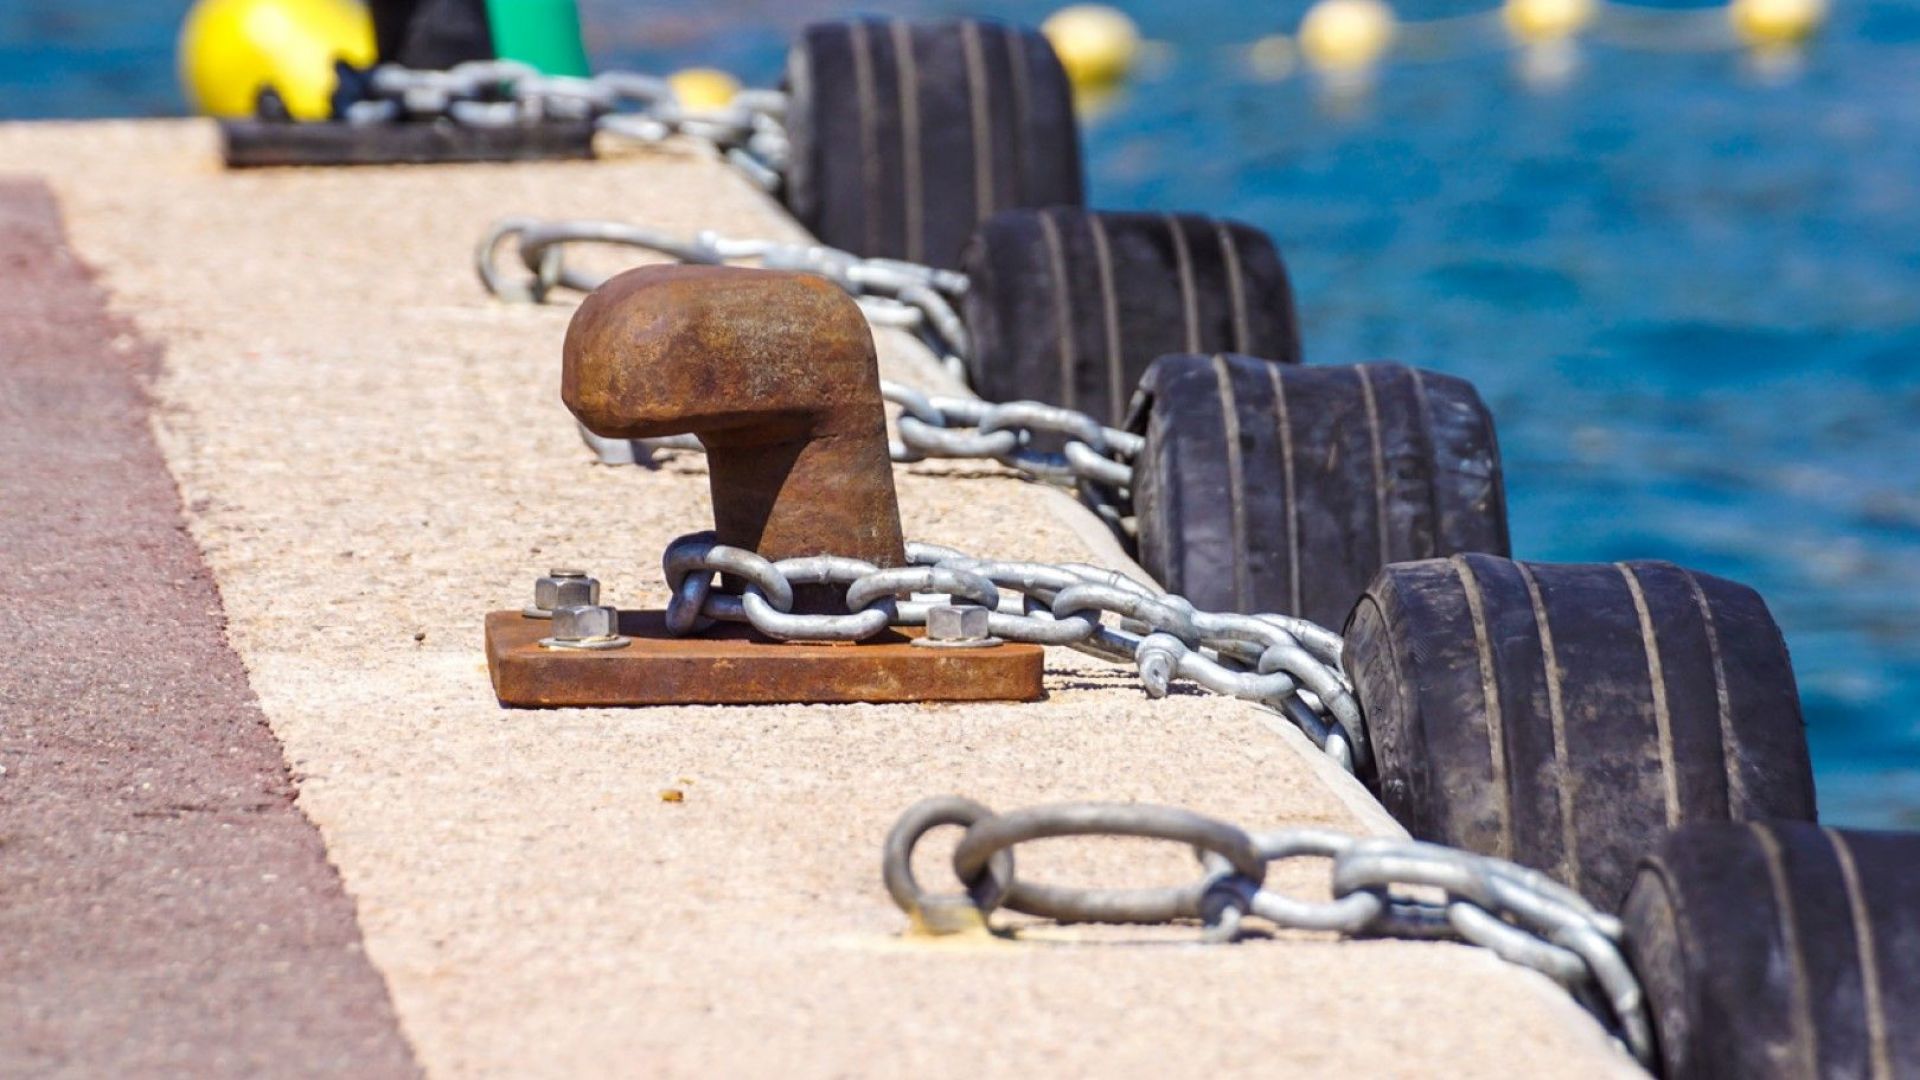 Започва разследване за причините за изчезването на българските моряци край Норвегия